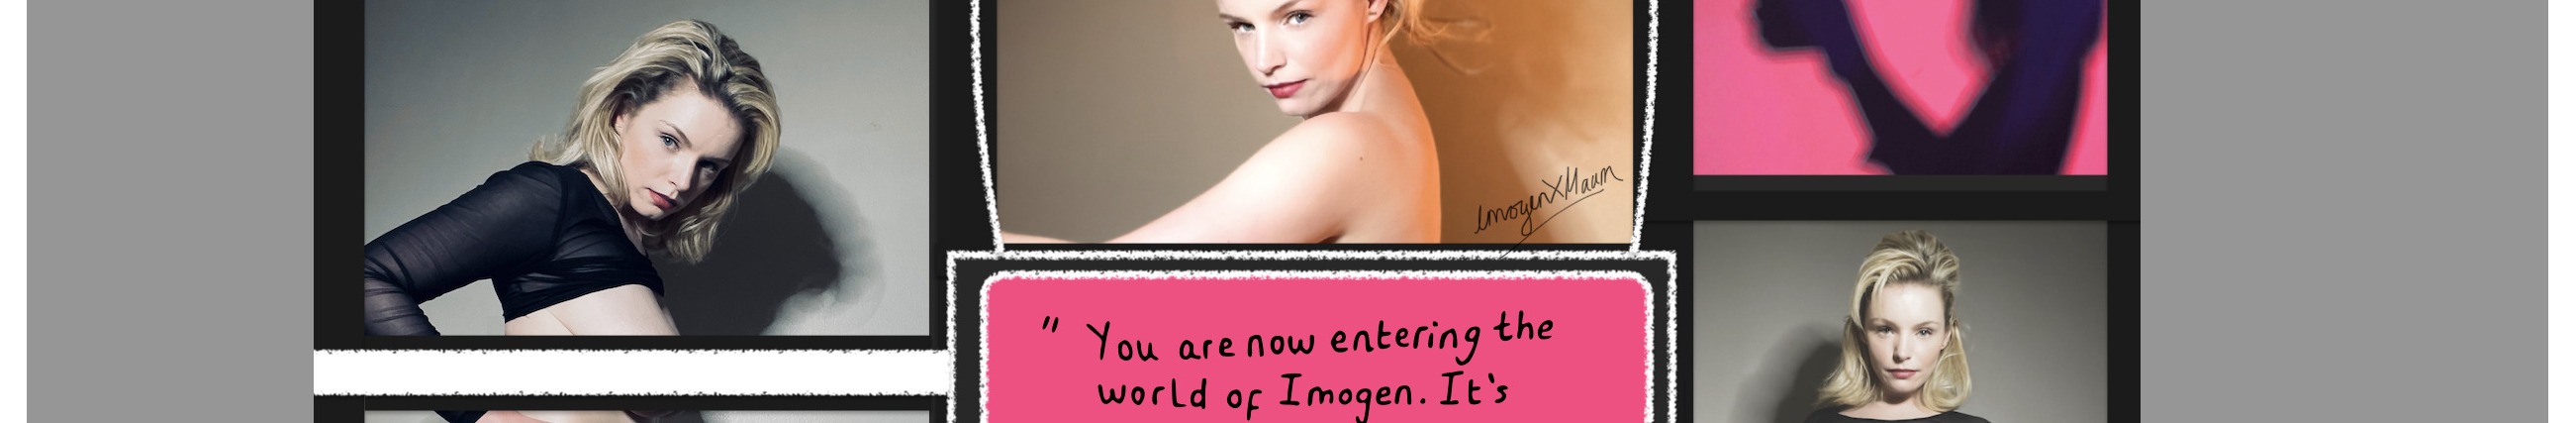 Imogen Mack - profile image